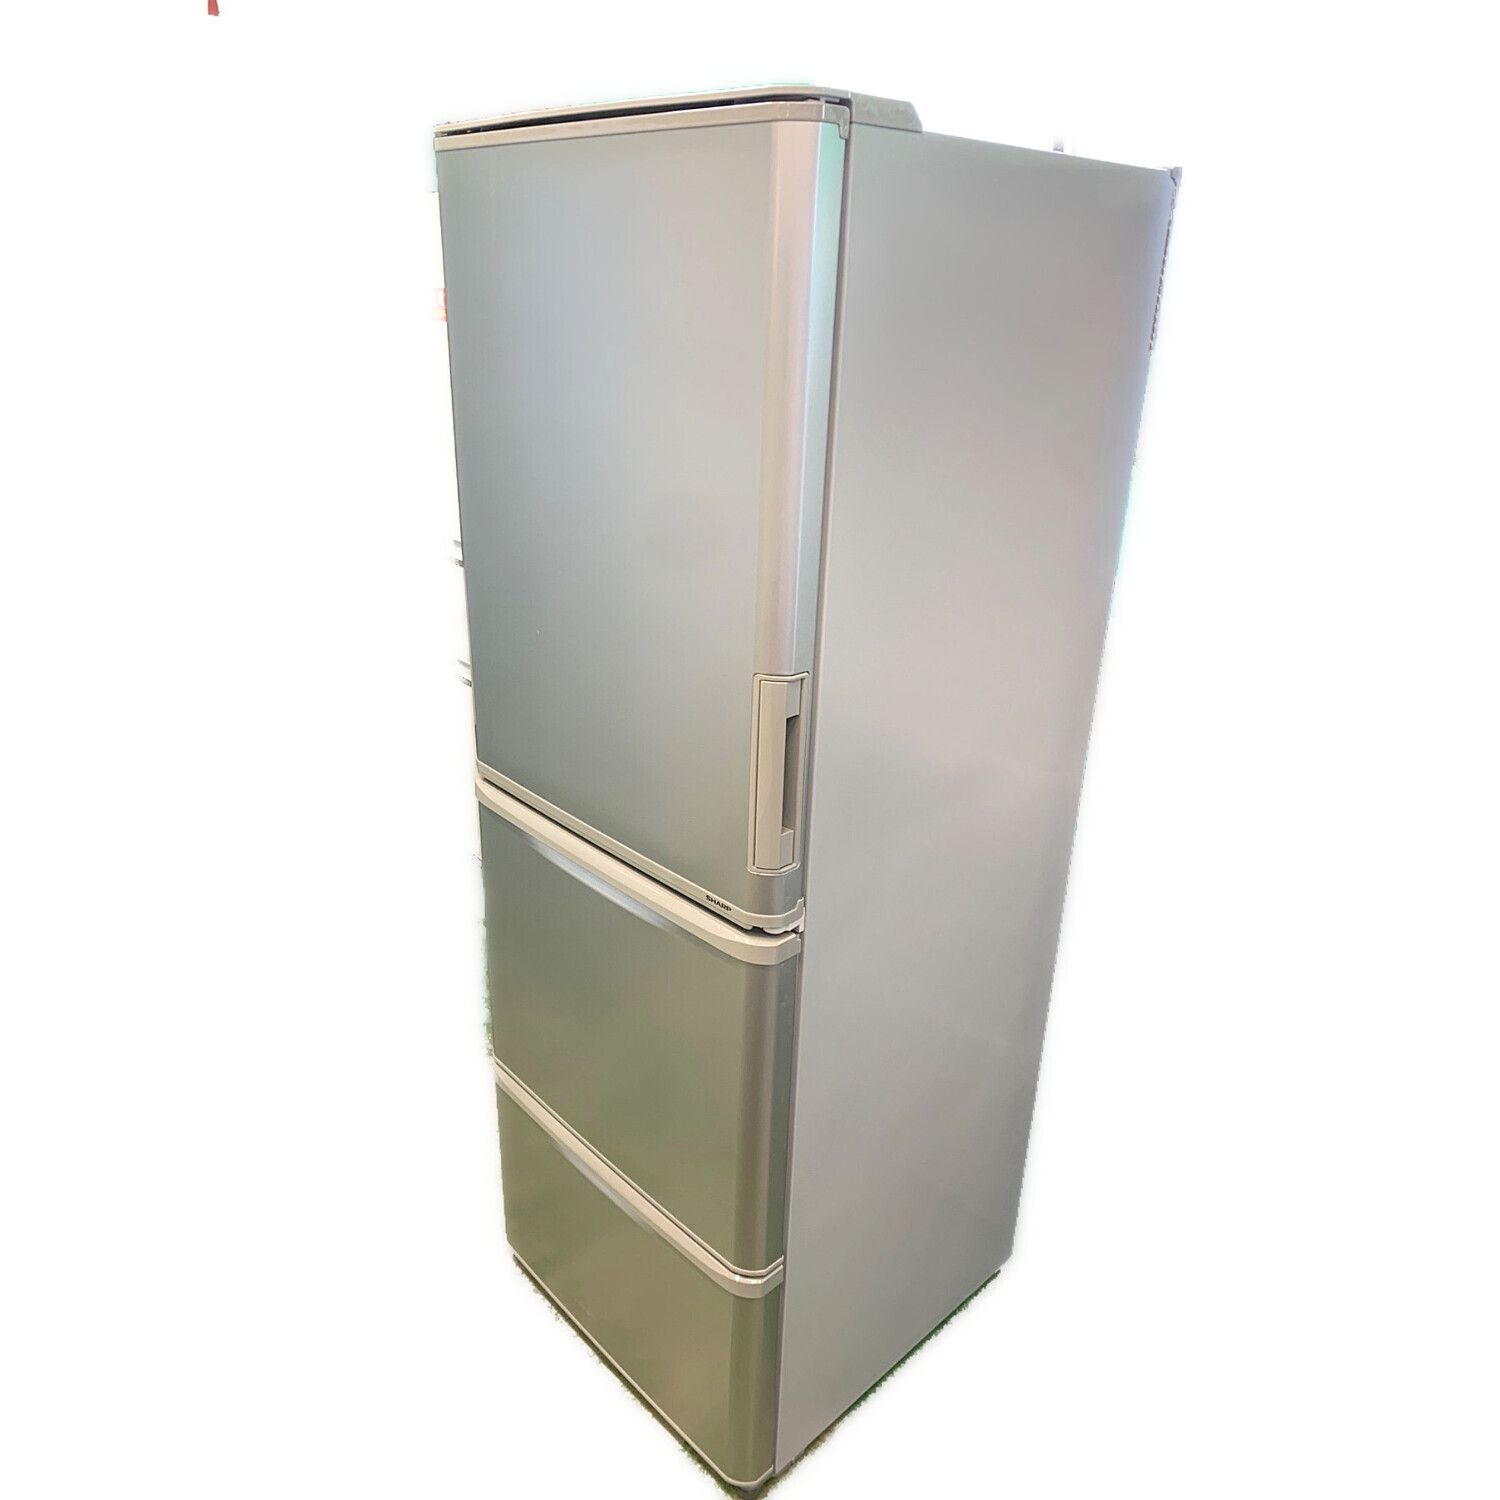 20,500円SHARP 冷蔵庫 SJ-W351E 350L 2019年製 左右開き 美品